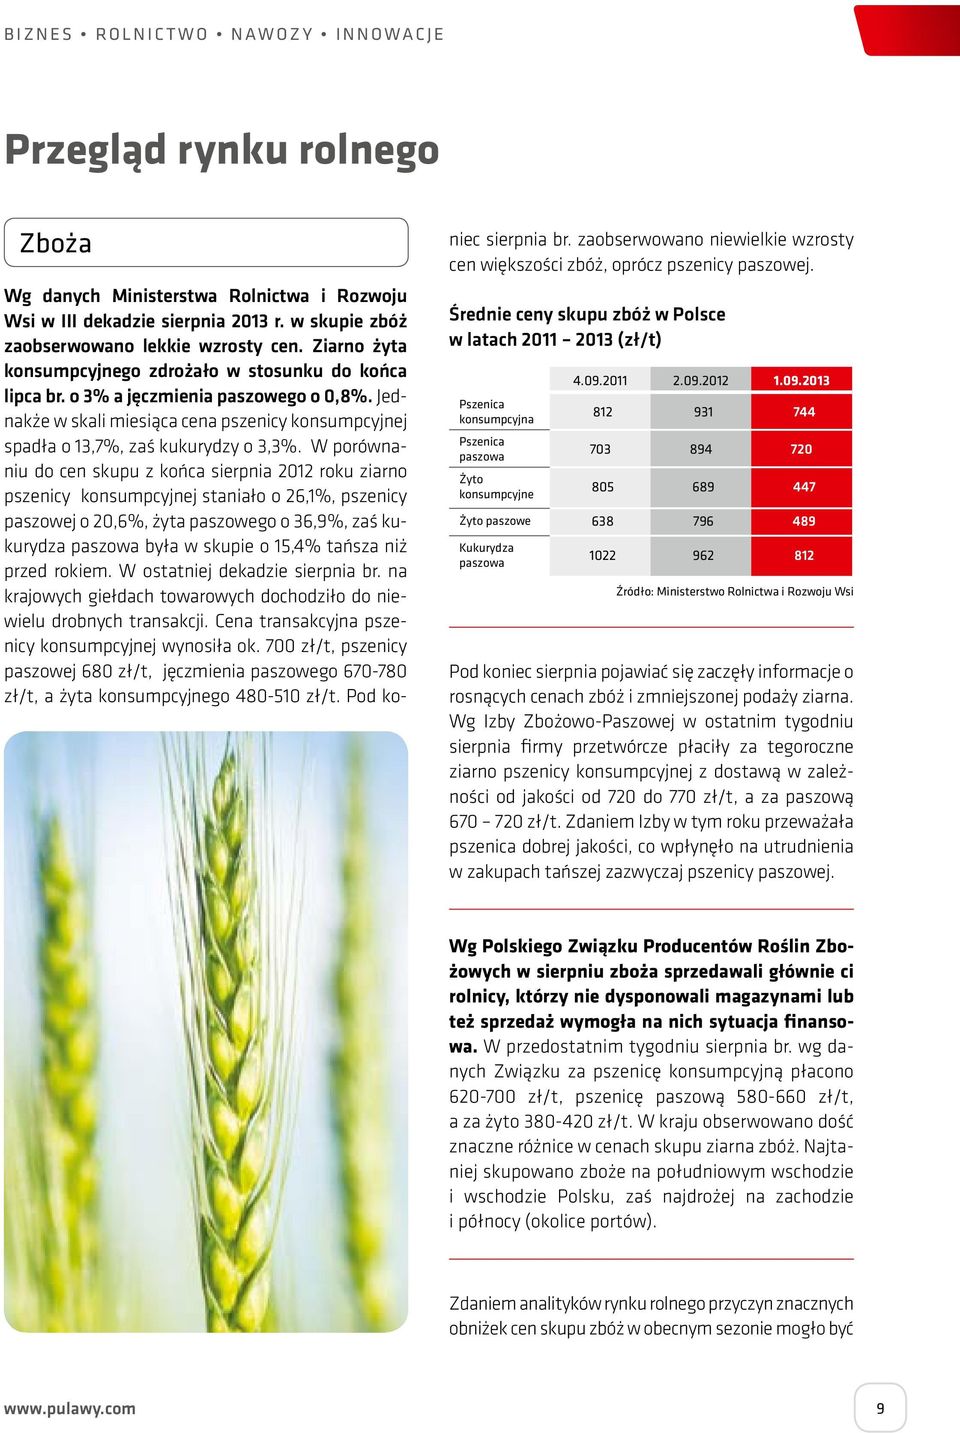 W porównaniu do cen skupu z końca sierpnia 2012 roku ziarno pszenicy konsumpcyjnej staniało o 26,1%, pszenicy paszowej o 20,6%, żyta paszowego o 36,9%, zaś kukurydza paszowa była w skupie o 15,4%